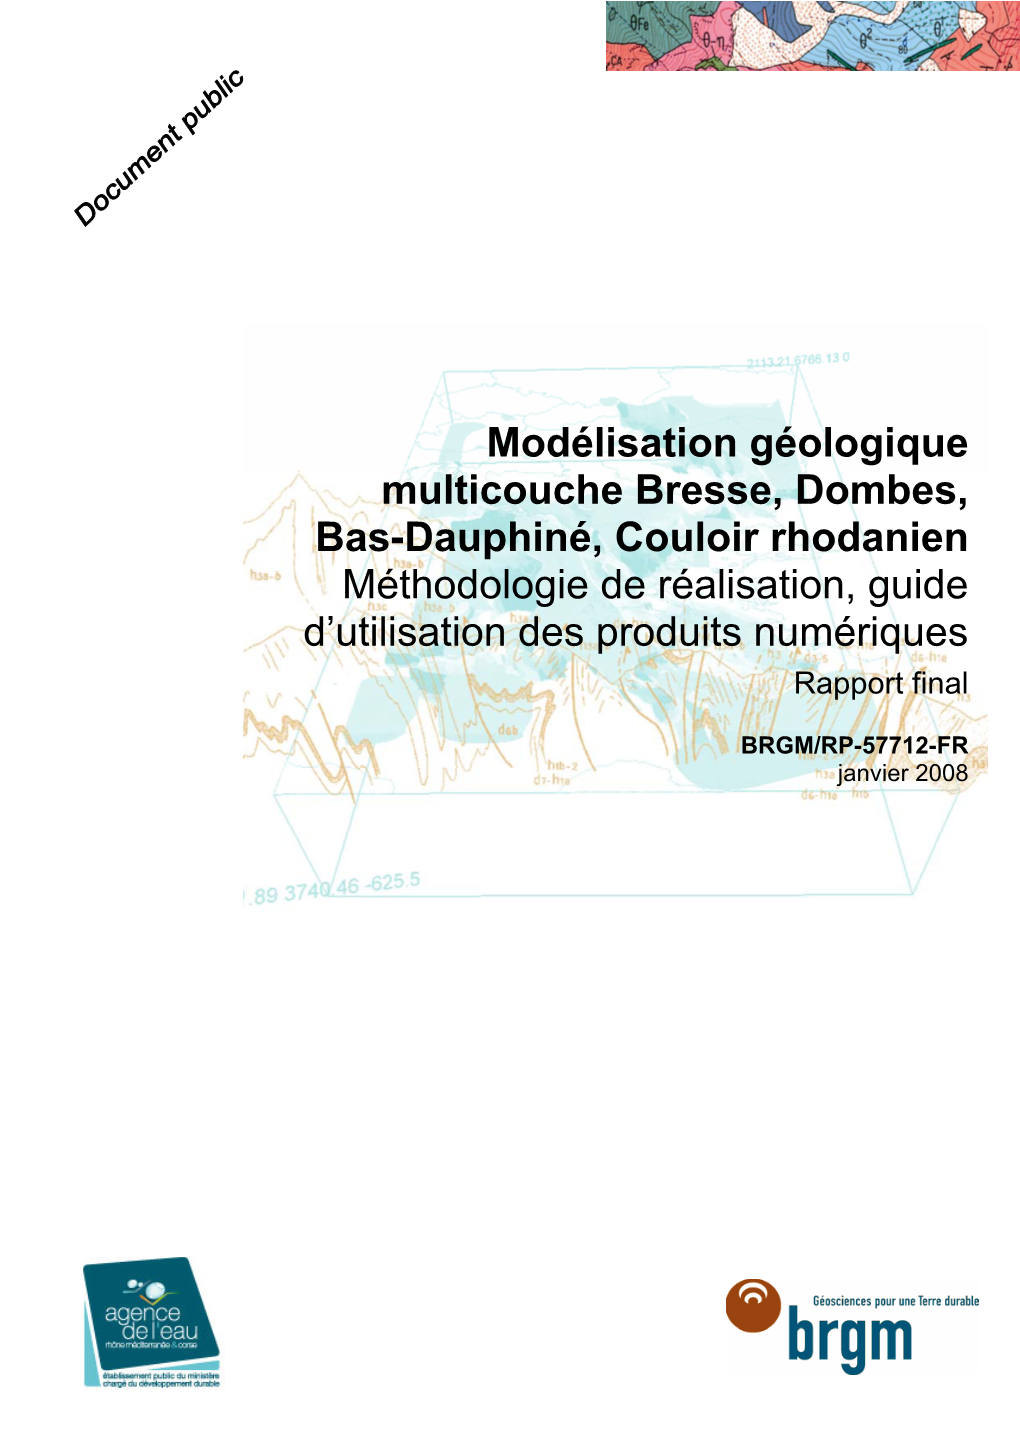 Modélisation Géologique Multicouche Bresse, Dombes, Bas-Dauphiné, Couloir Rhodanien Méthodologie De Réalisation, Guide D’Utilisation Des Produits Numériques